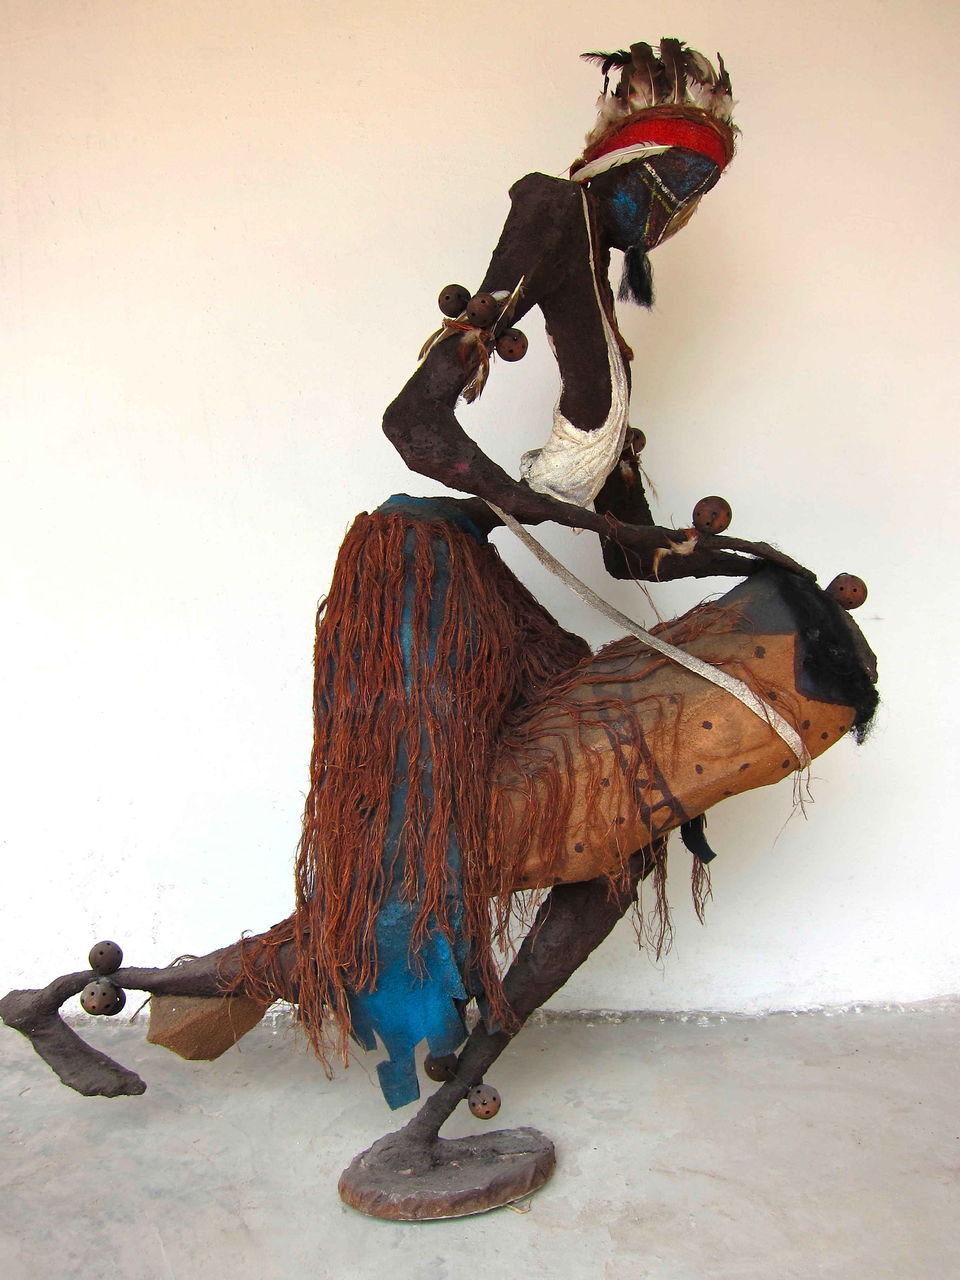 Rhode Bath-Schéba Makoumbou Sculptures